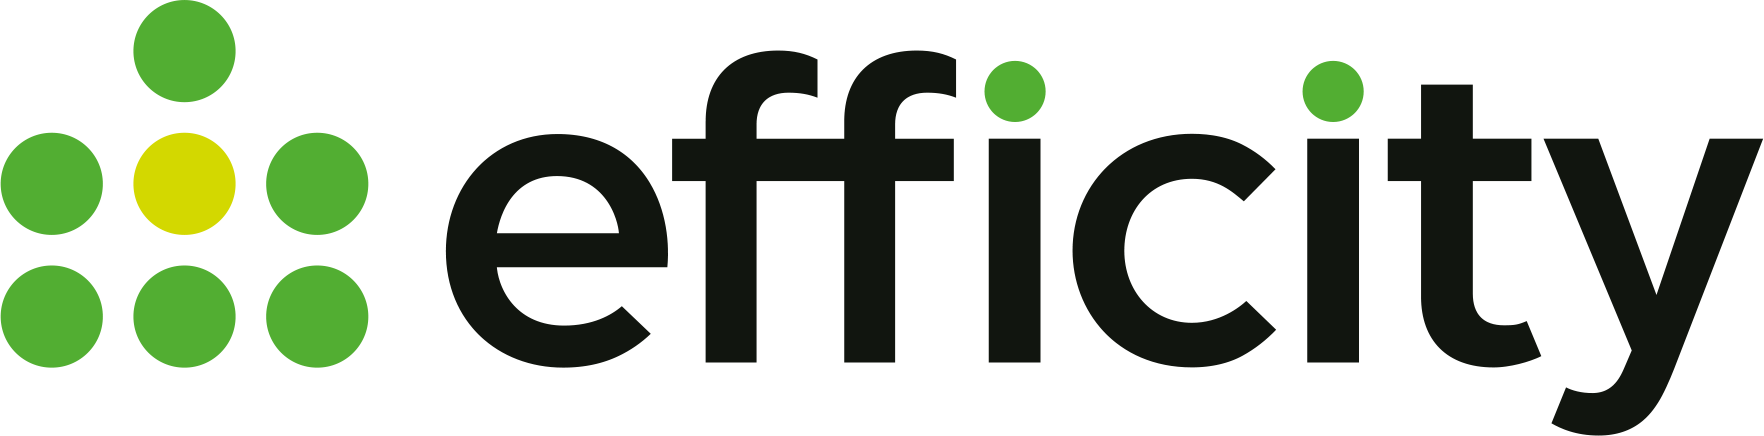 logo Efficity